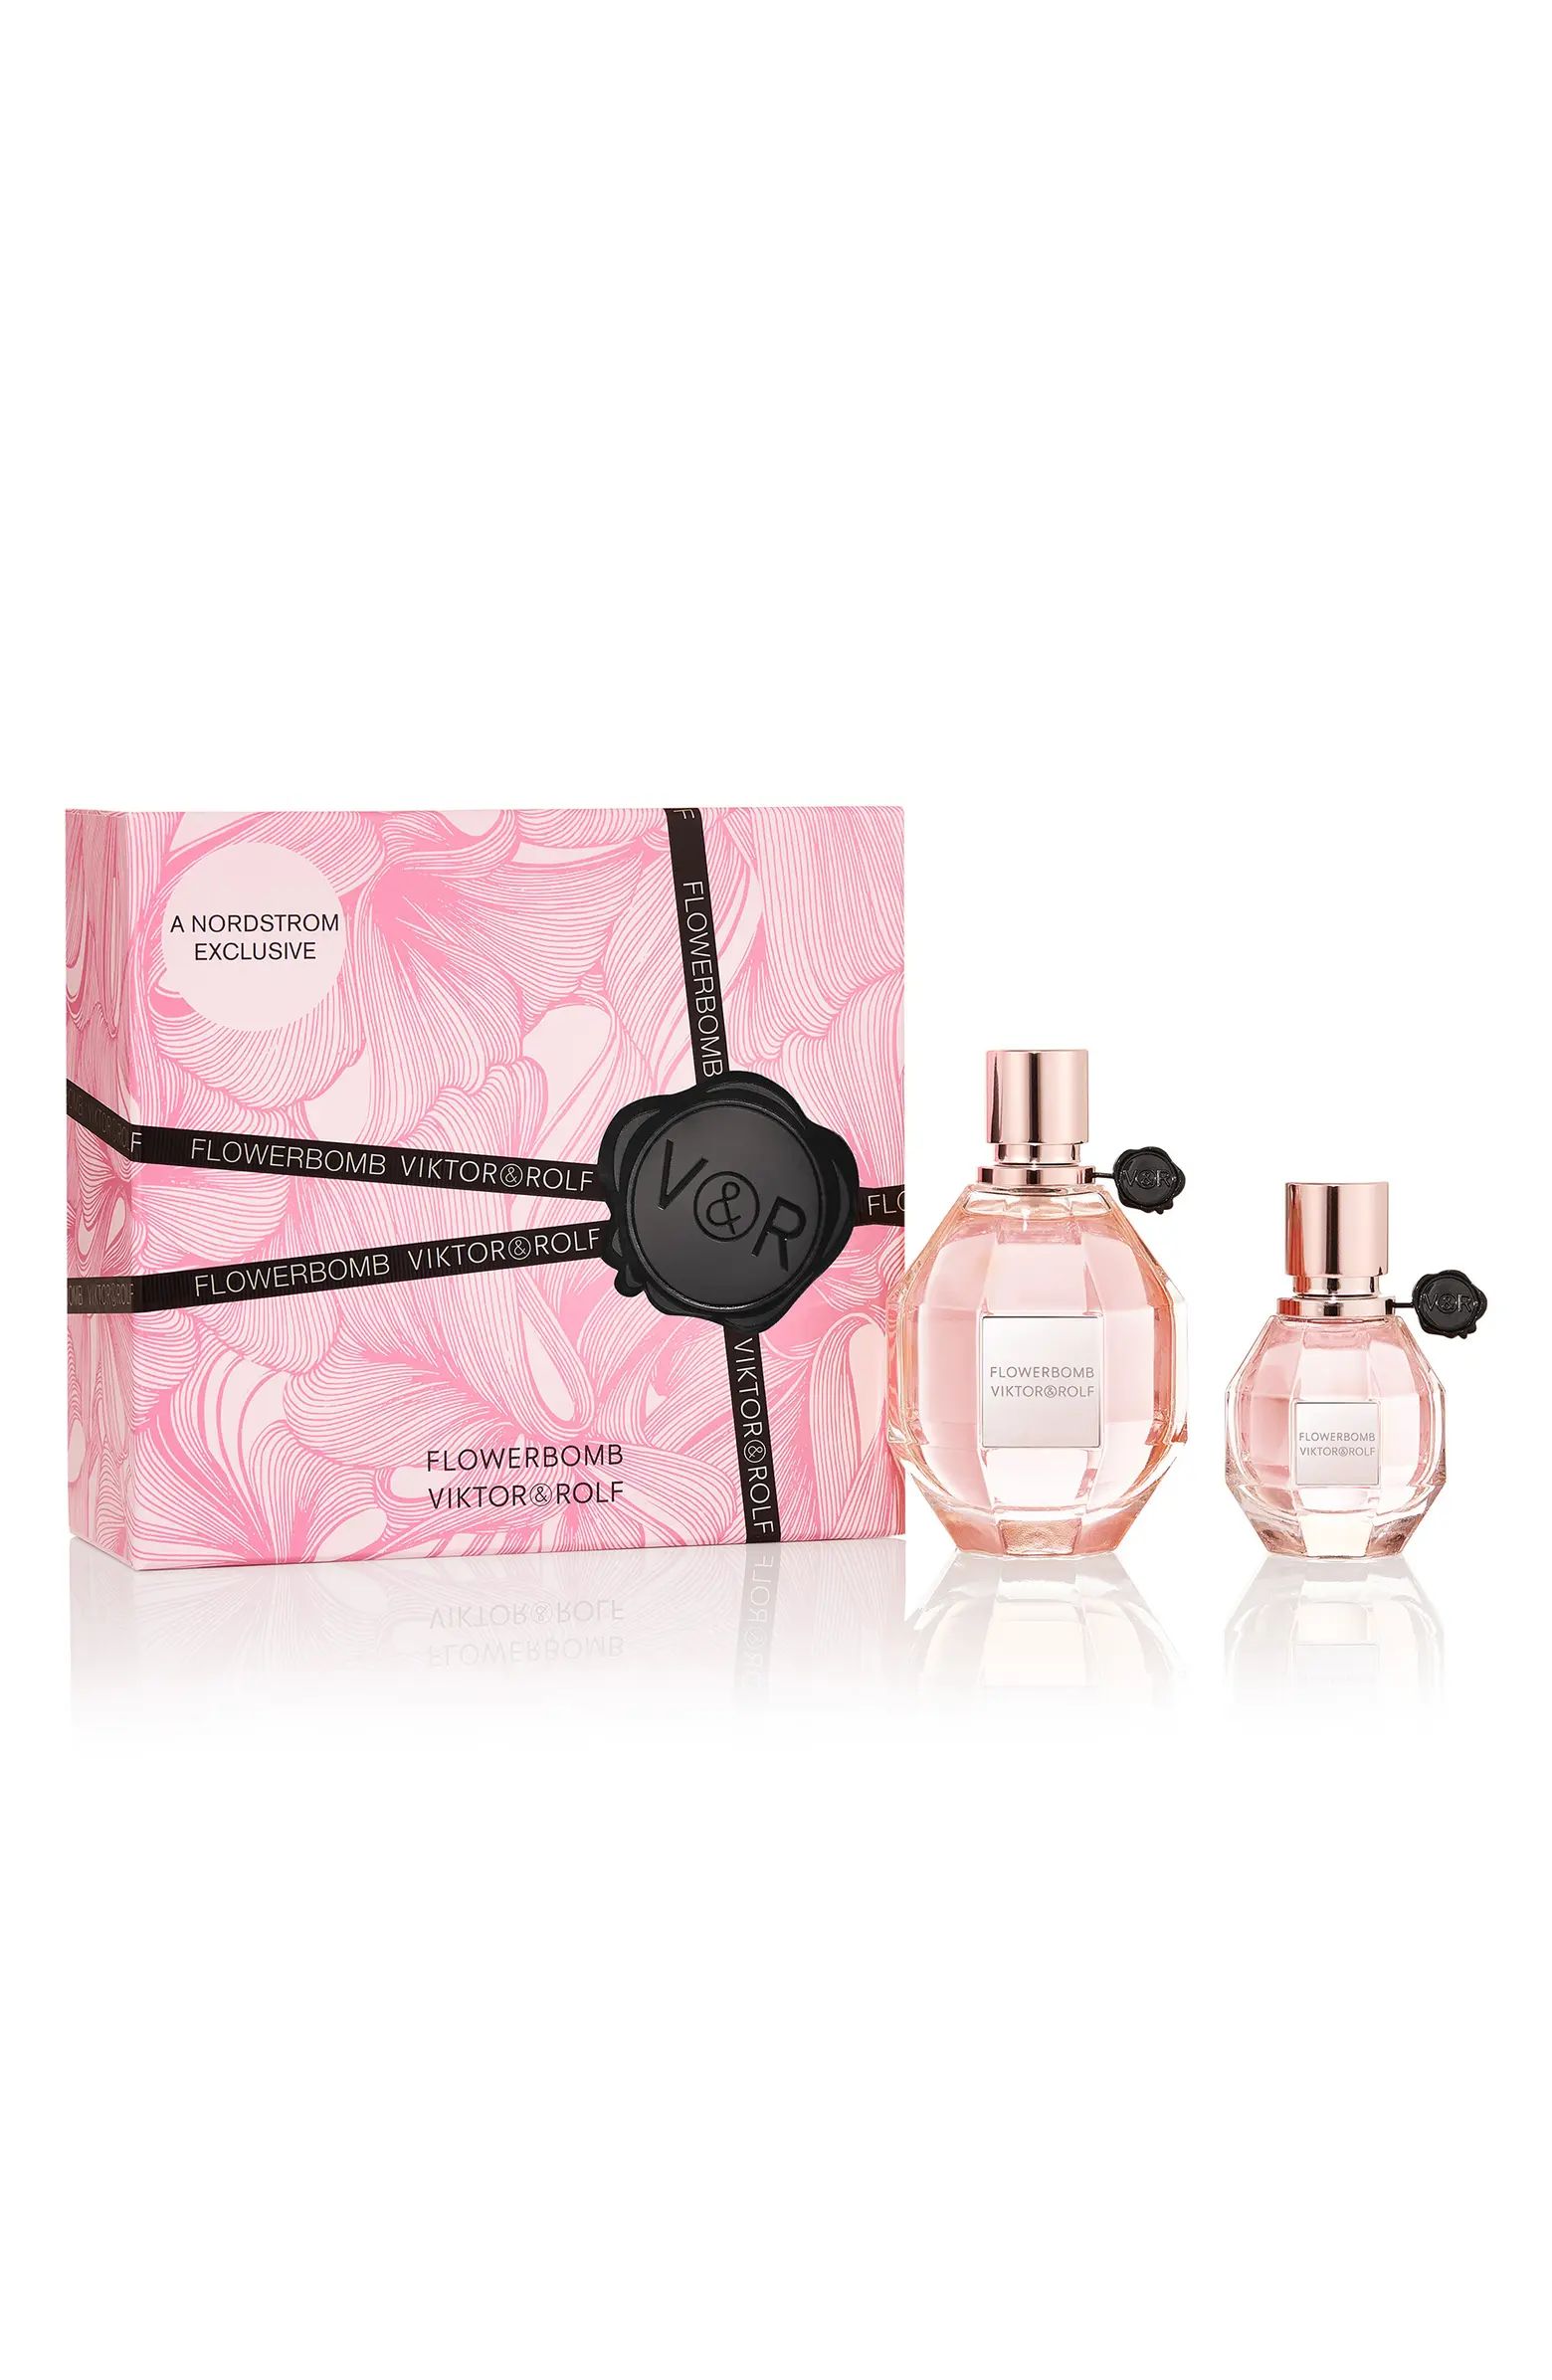 Flowerbomb Eau de Parfum Set $282 Value | Nordstrom